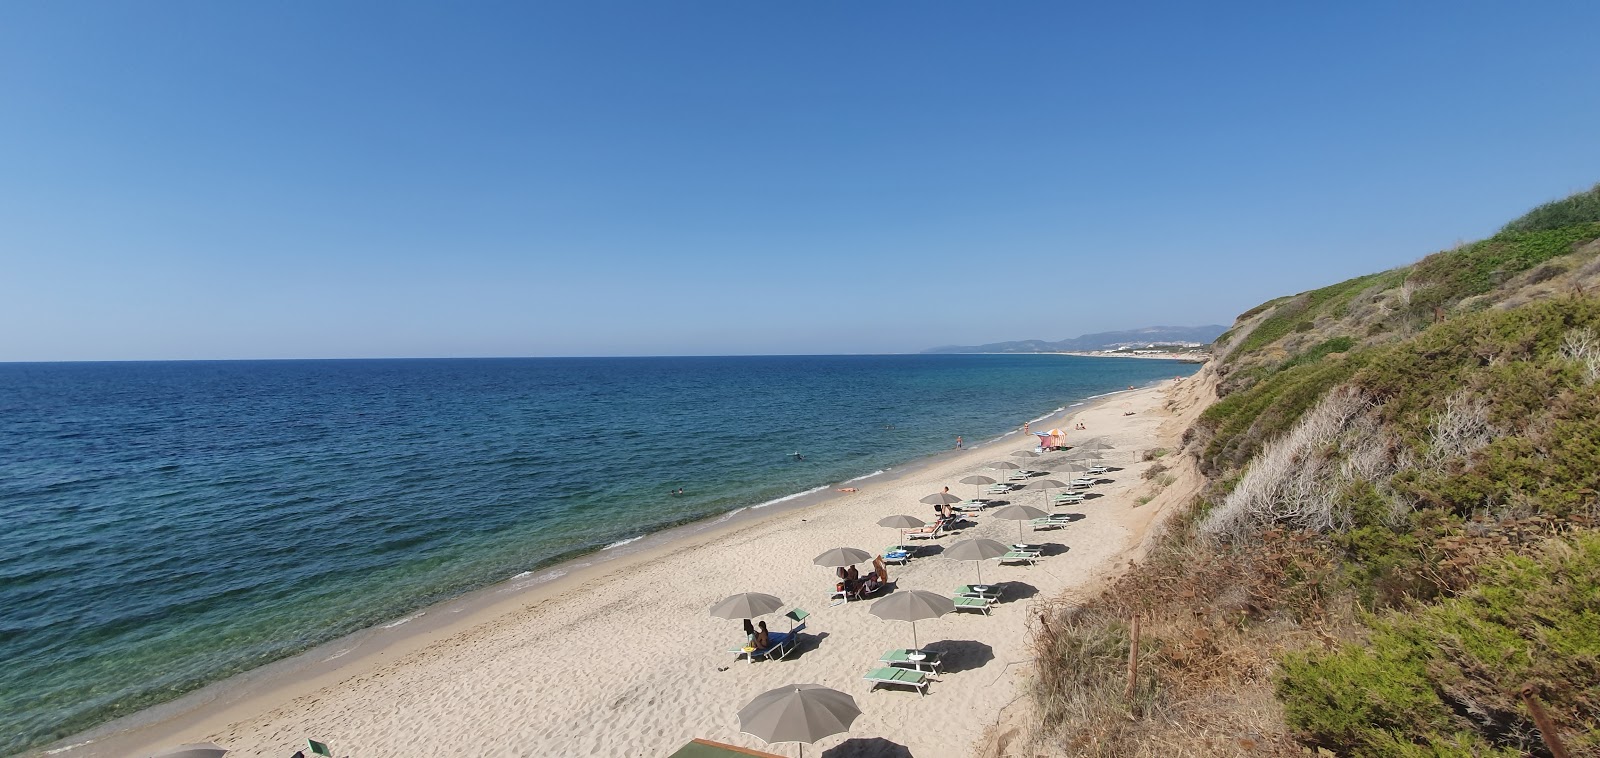 Photo of Spiaggia La Ciaccia with spacious shore